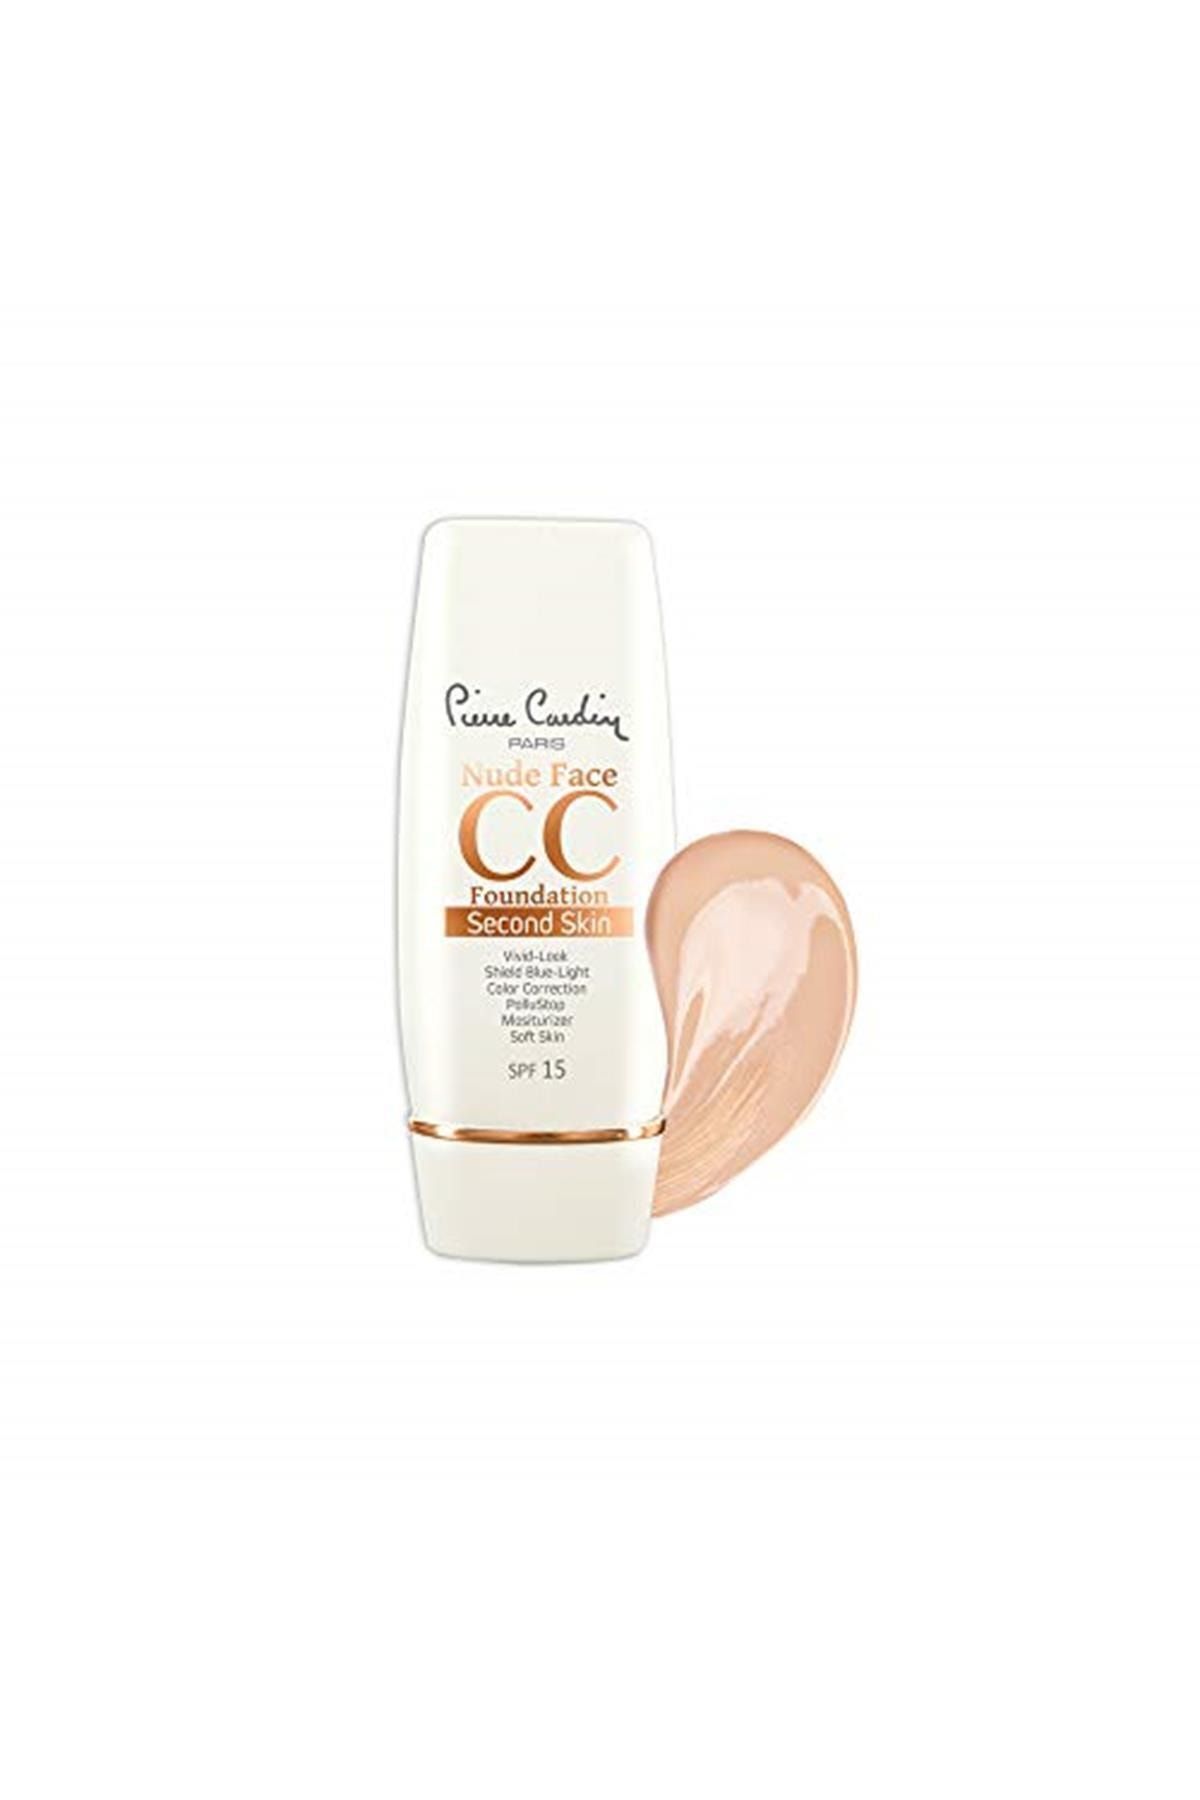 Pierre Cardin Nude Face cc Cream